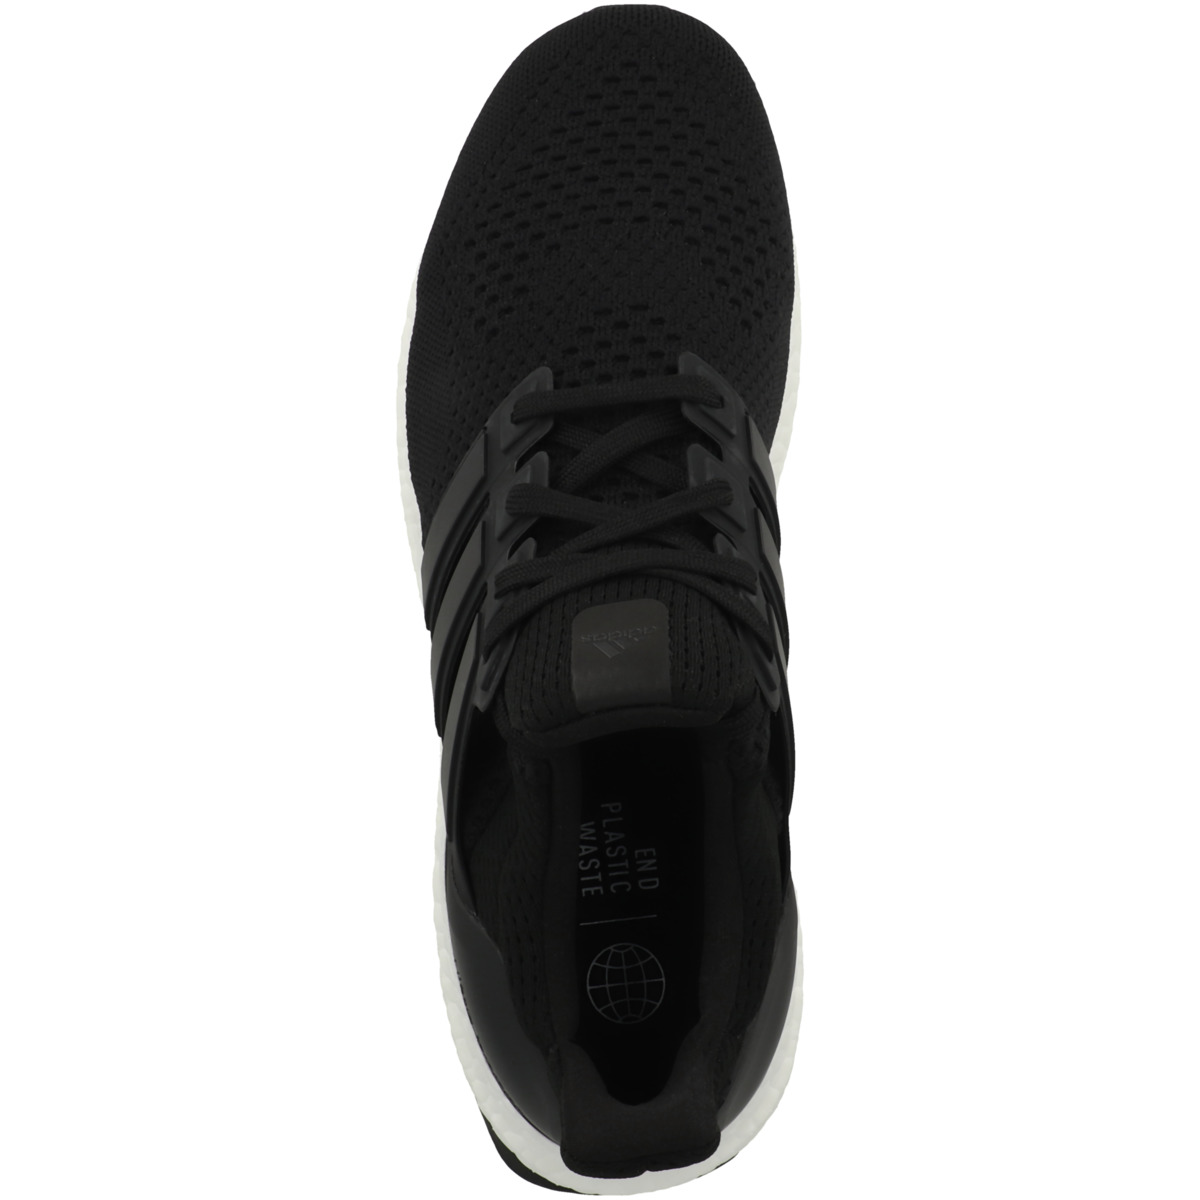 Adidas Ultraboost 1.0 Laufschuhe schwarz